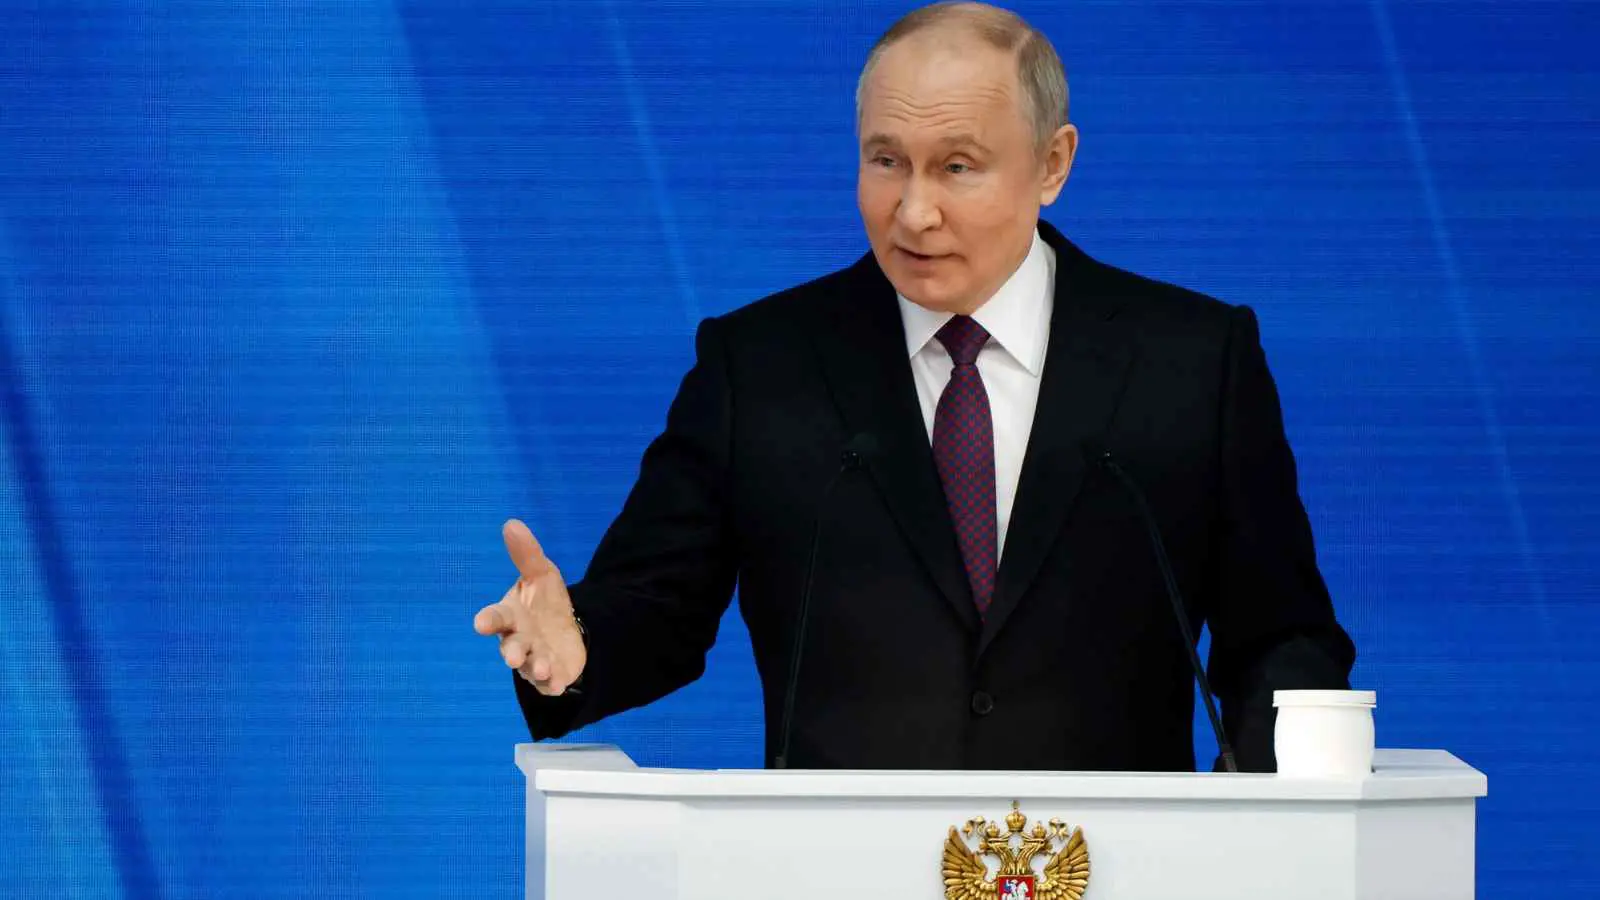 تلغراف: بوتين حول أوكرانيا إلى "لعنة" تلاحق الناتو